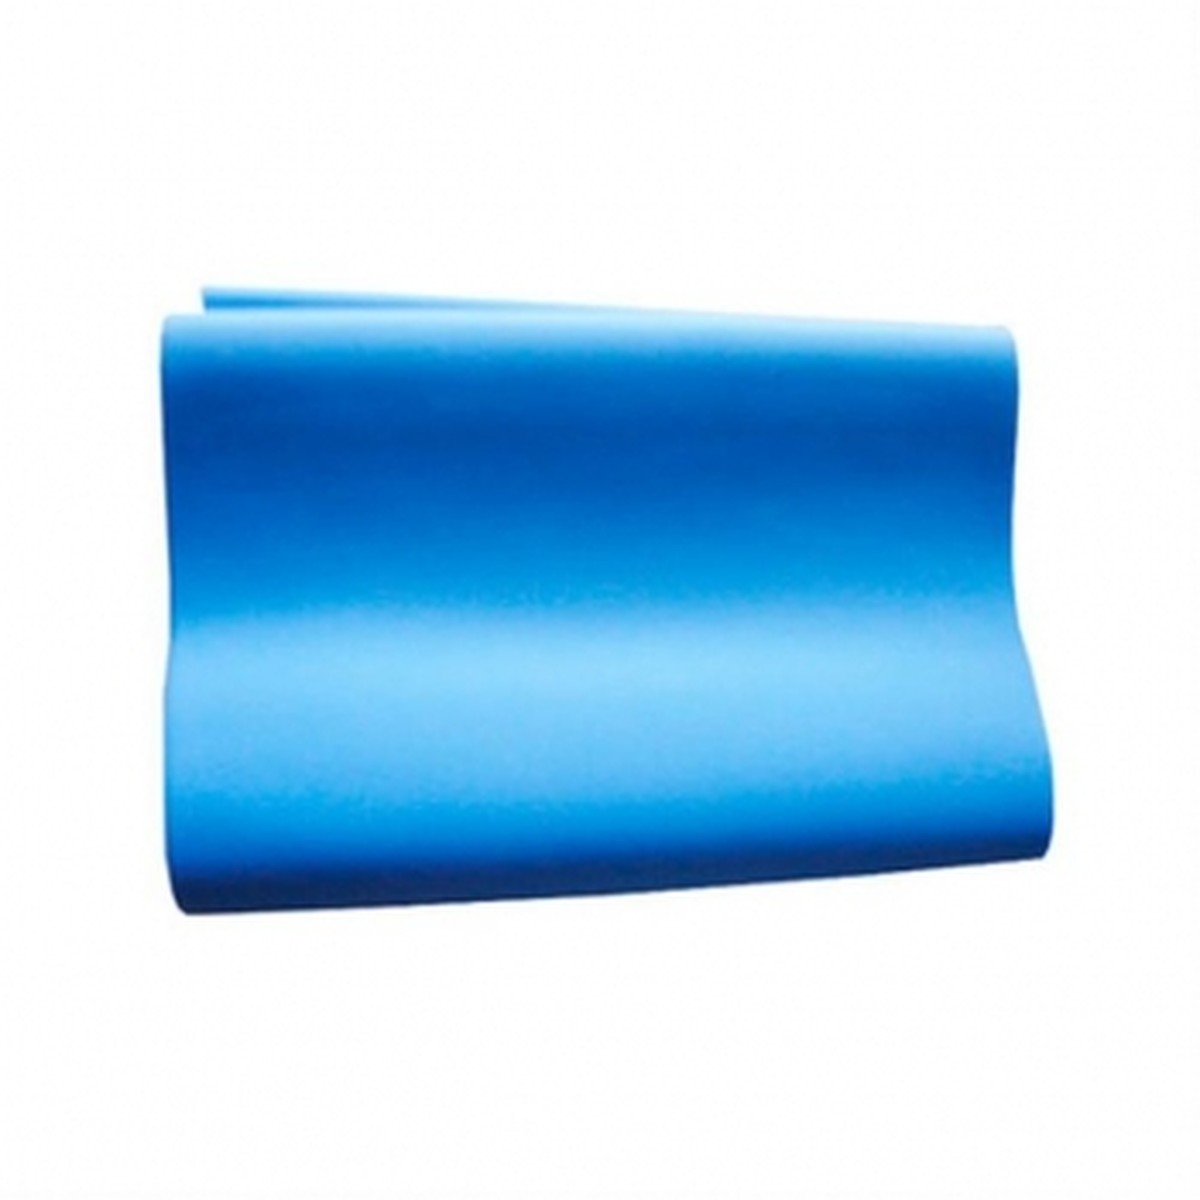 Foto do produto Faixa Super Band elástica nível forte (azul)